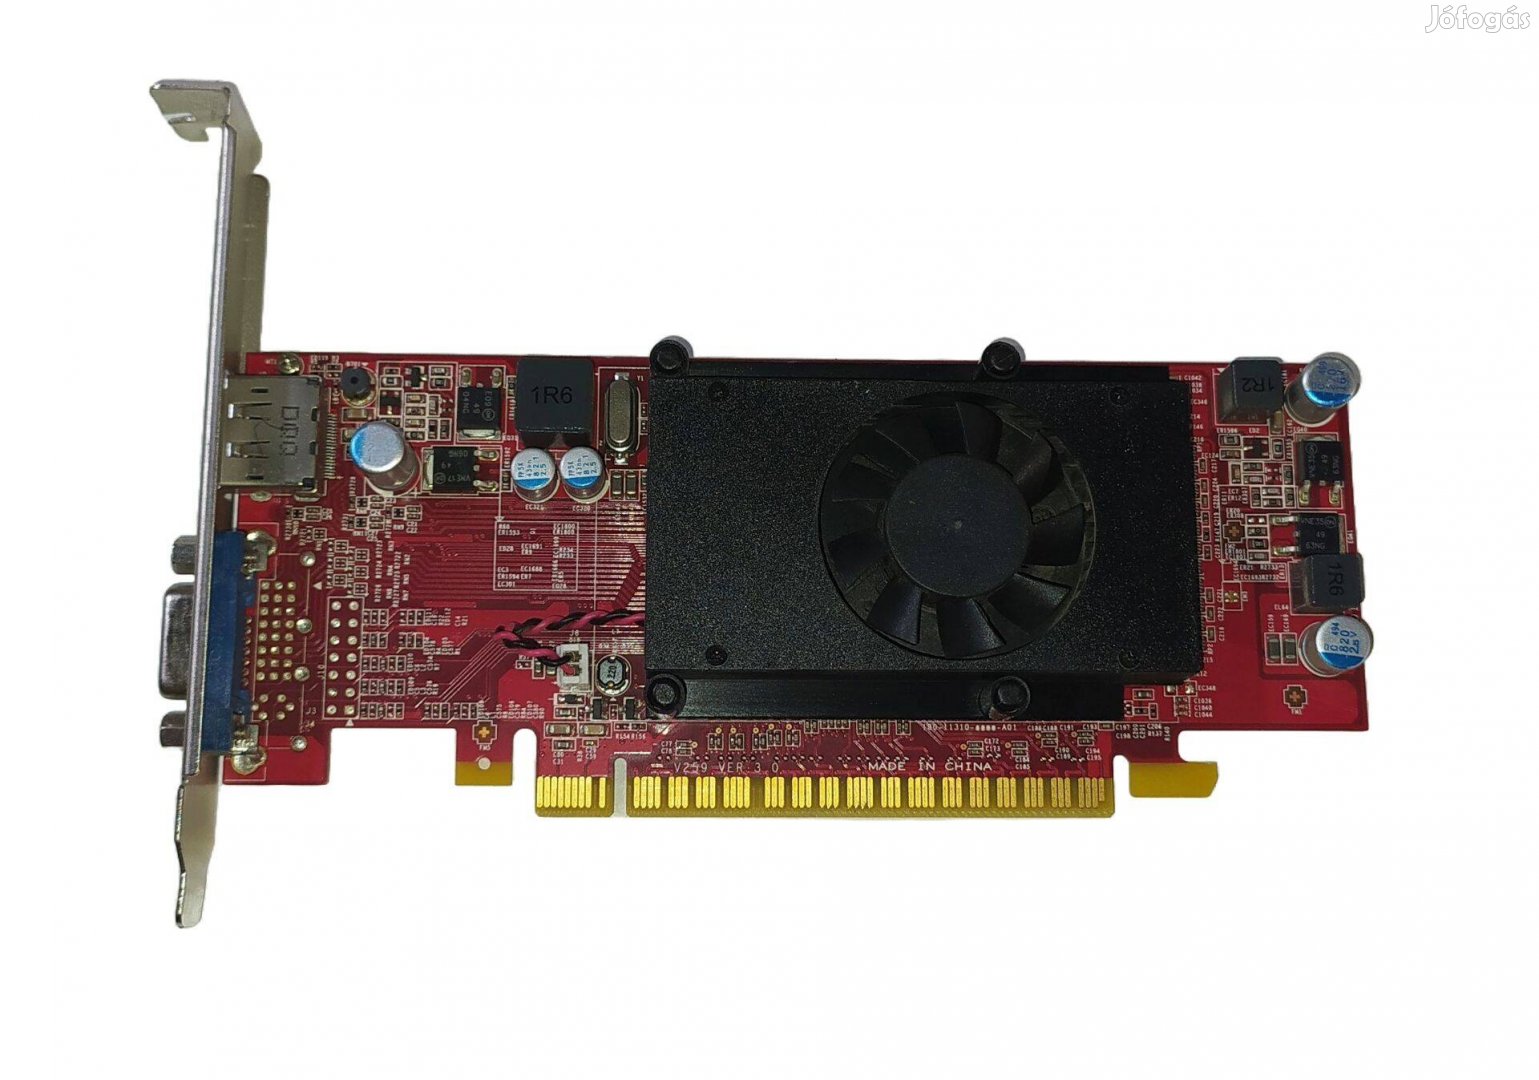 MSI Geforce GT620 1GB PCI-E videókártya